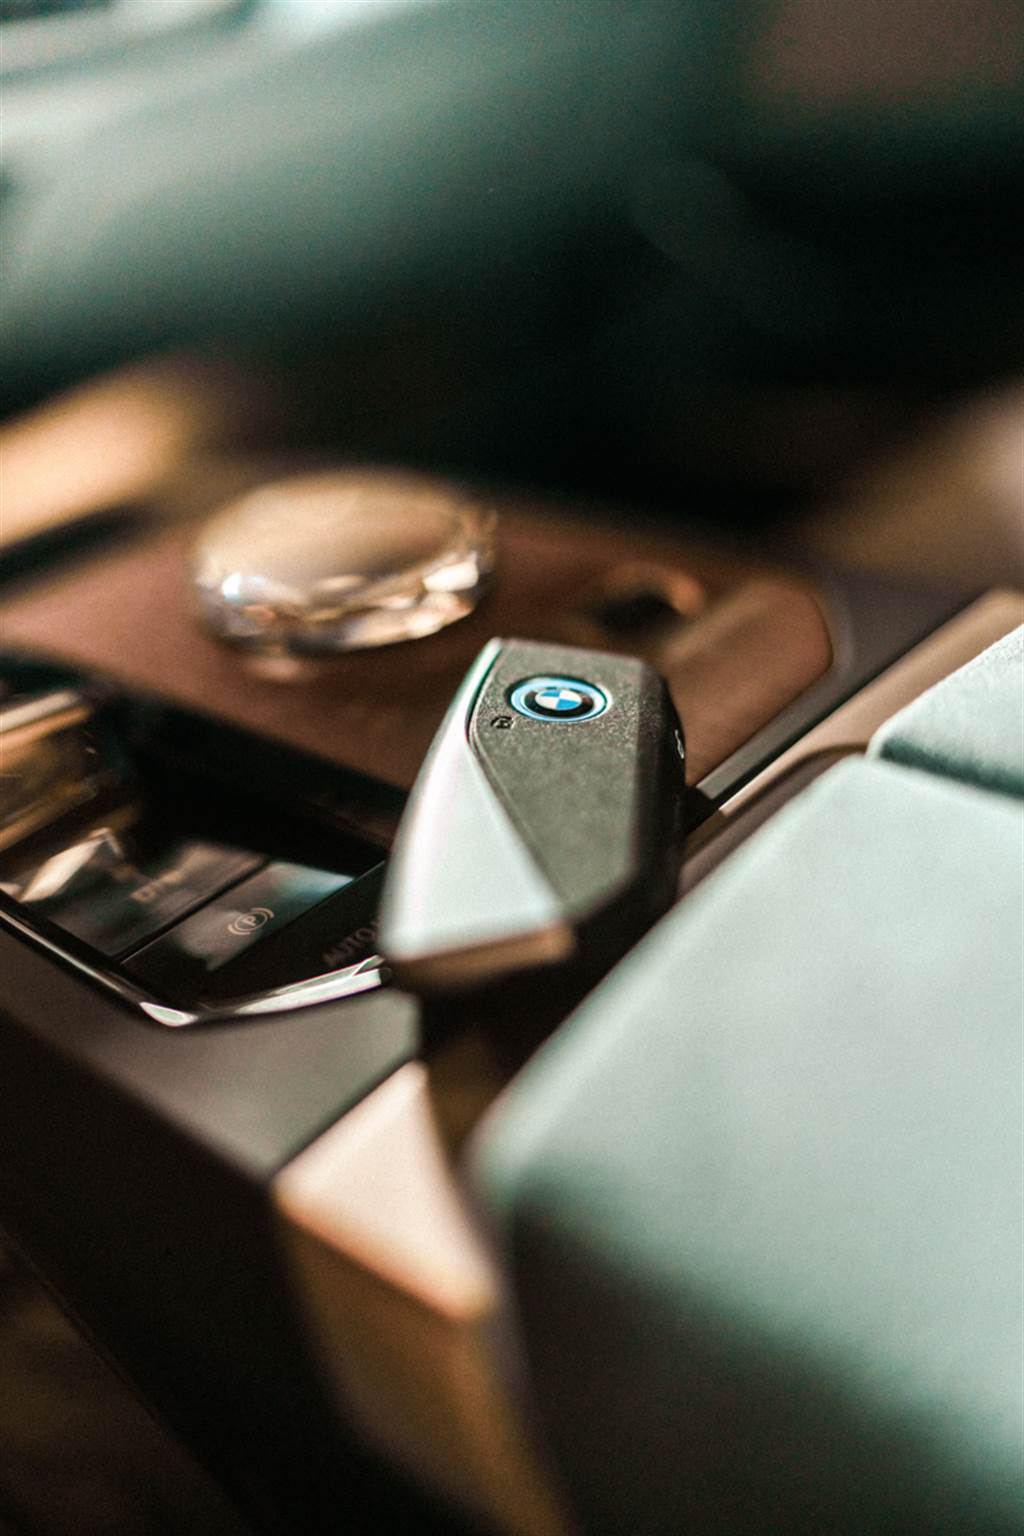 迎合未來數位化用車趨勢 BMW於CES 2021發表新世代iDrive系統與螢幕科技
